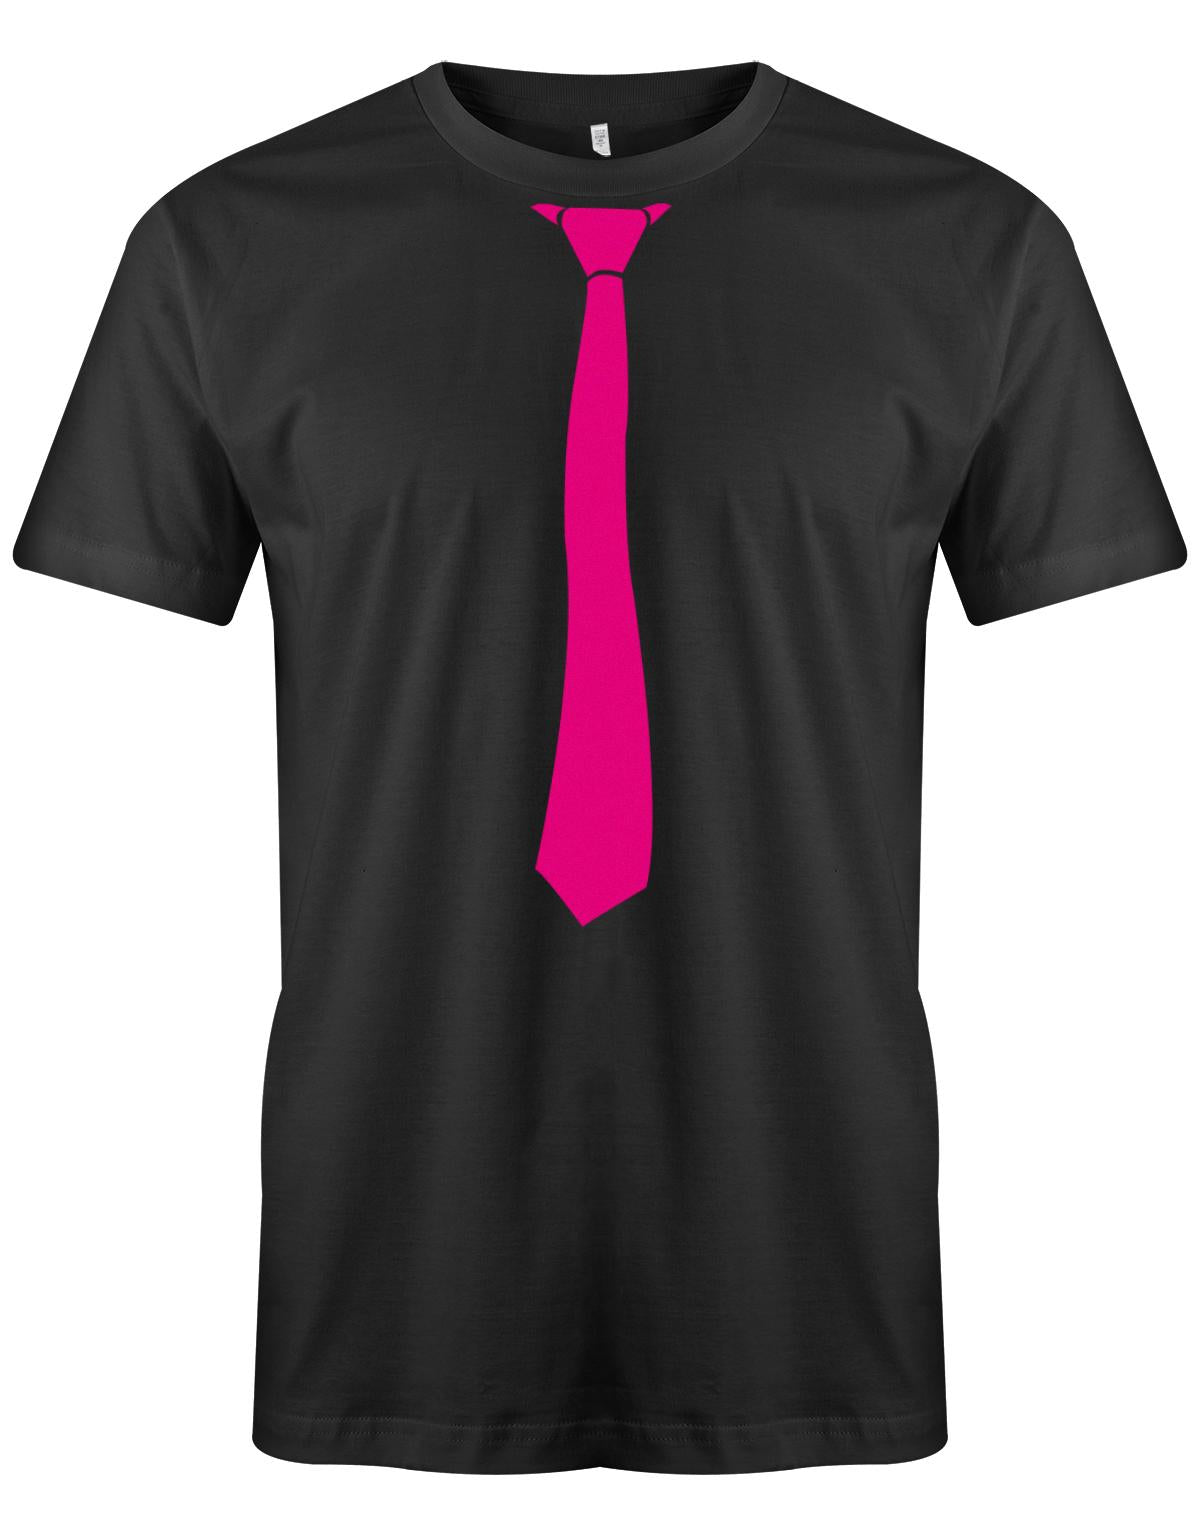 Krawatte-Sportlich-Herren-Shirt-JGA-Schwarz-Pink